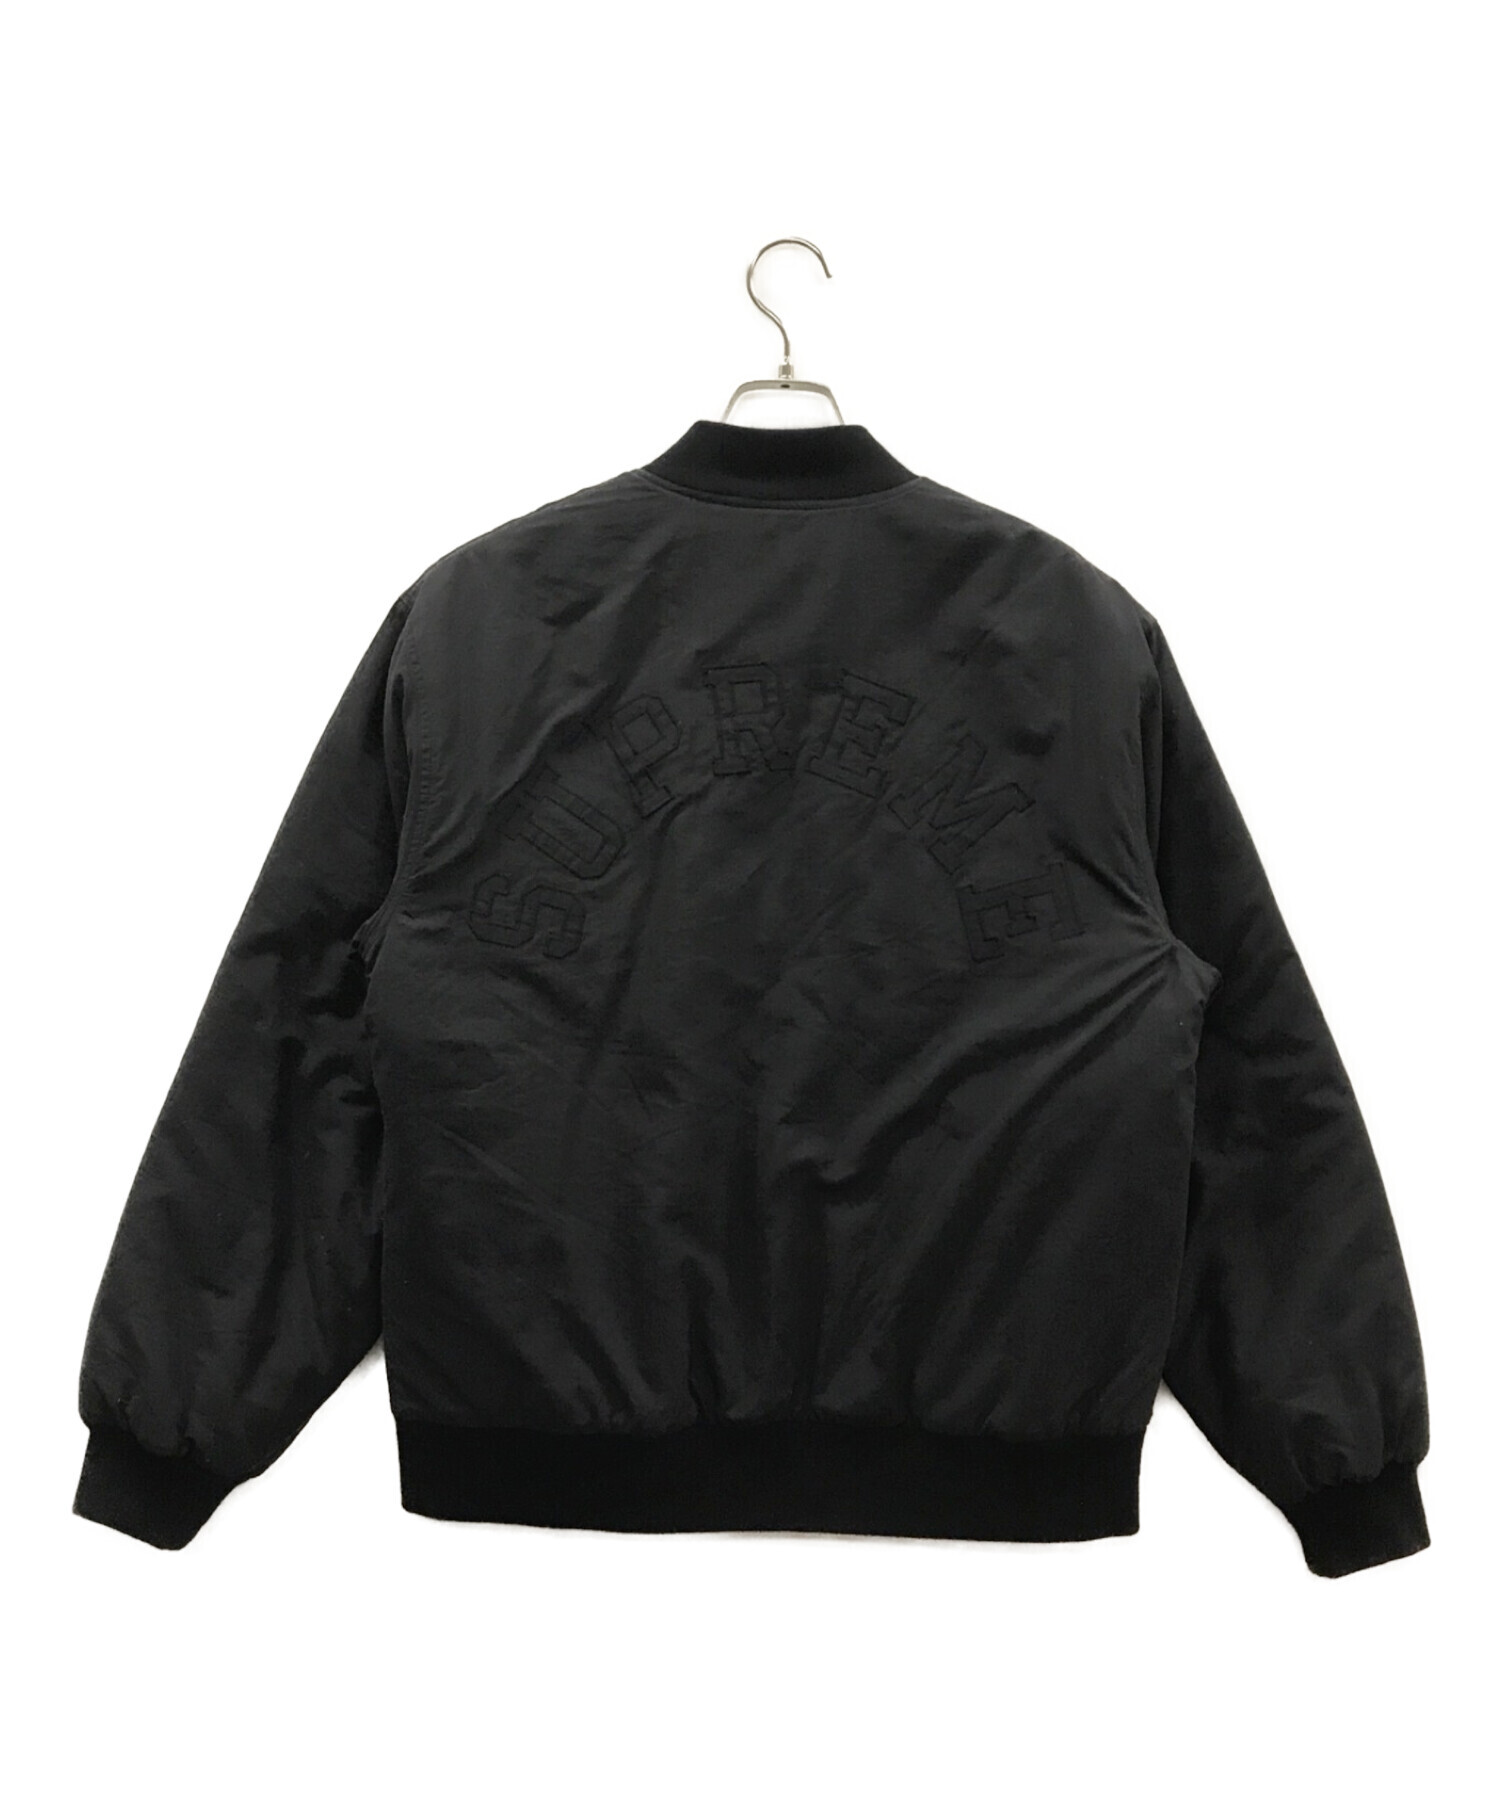 SUPREME×Champion (シュプリーム×チャンピオン) 17AW Color Blocked Jacket ブラック サイズ:S